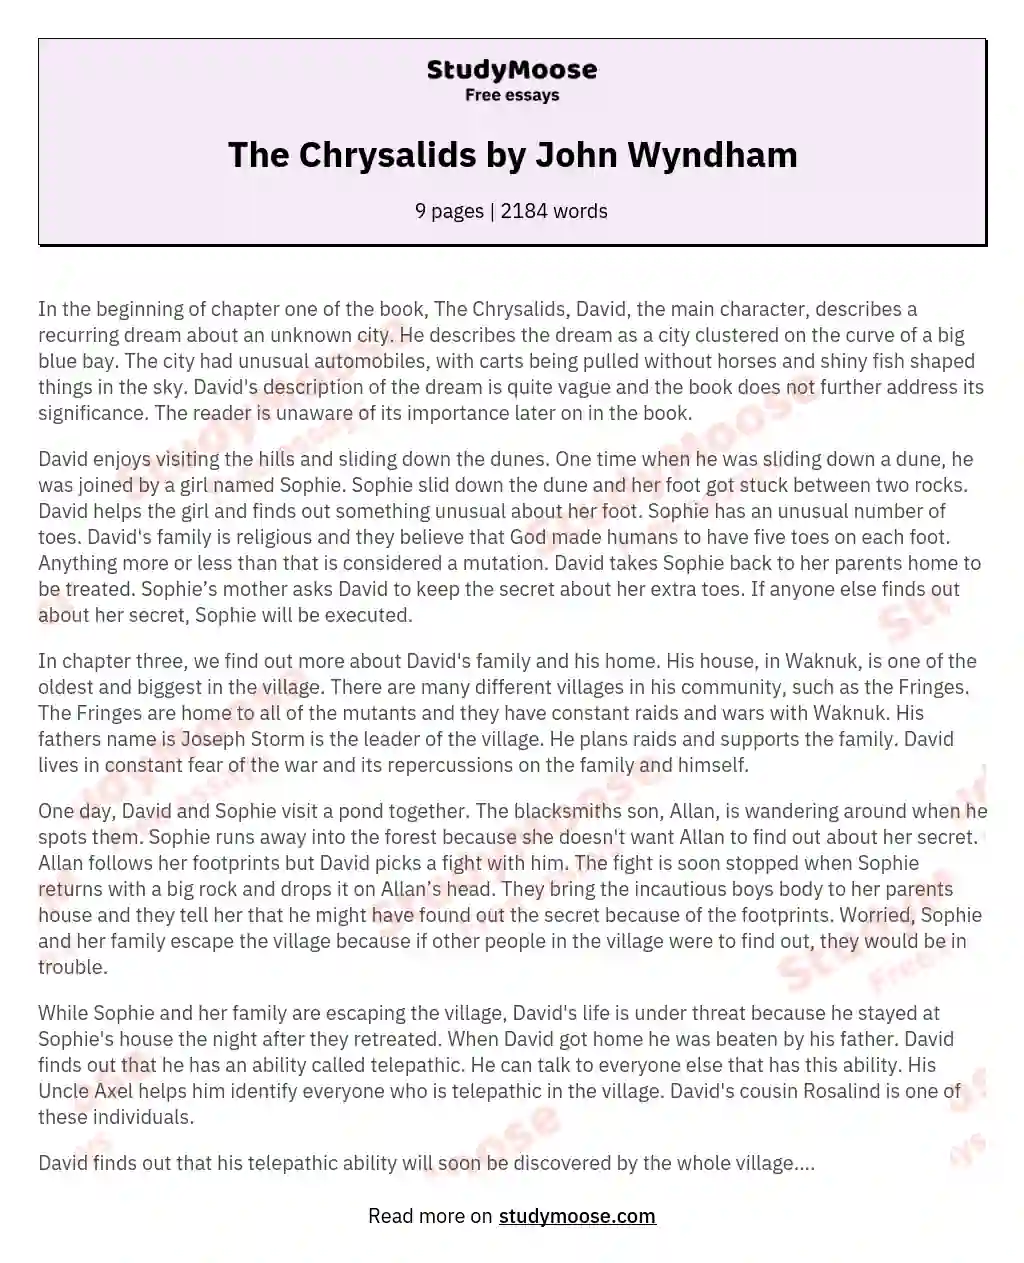 The Chrysalids by John Wyndham essay